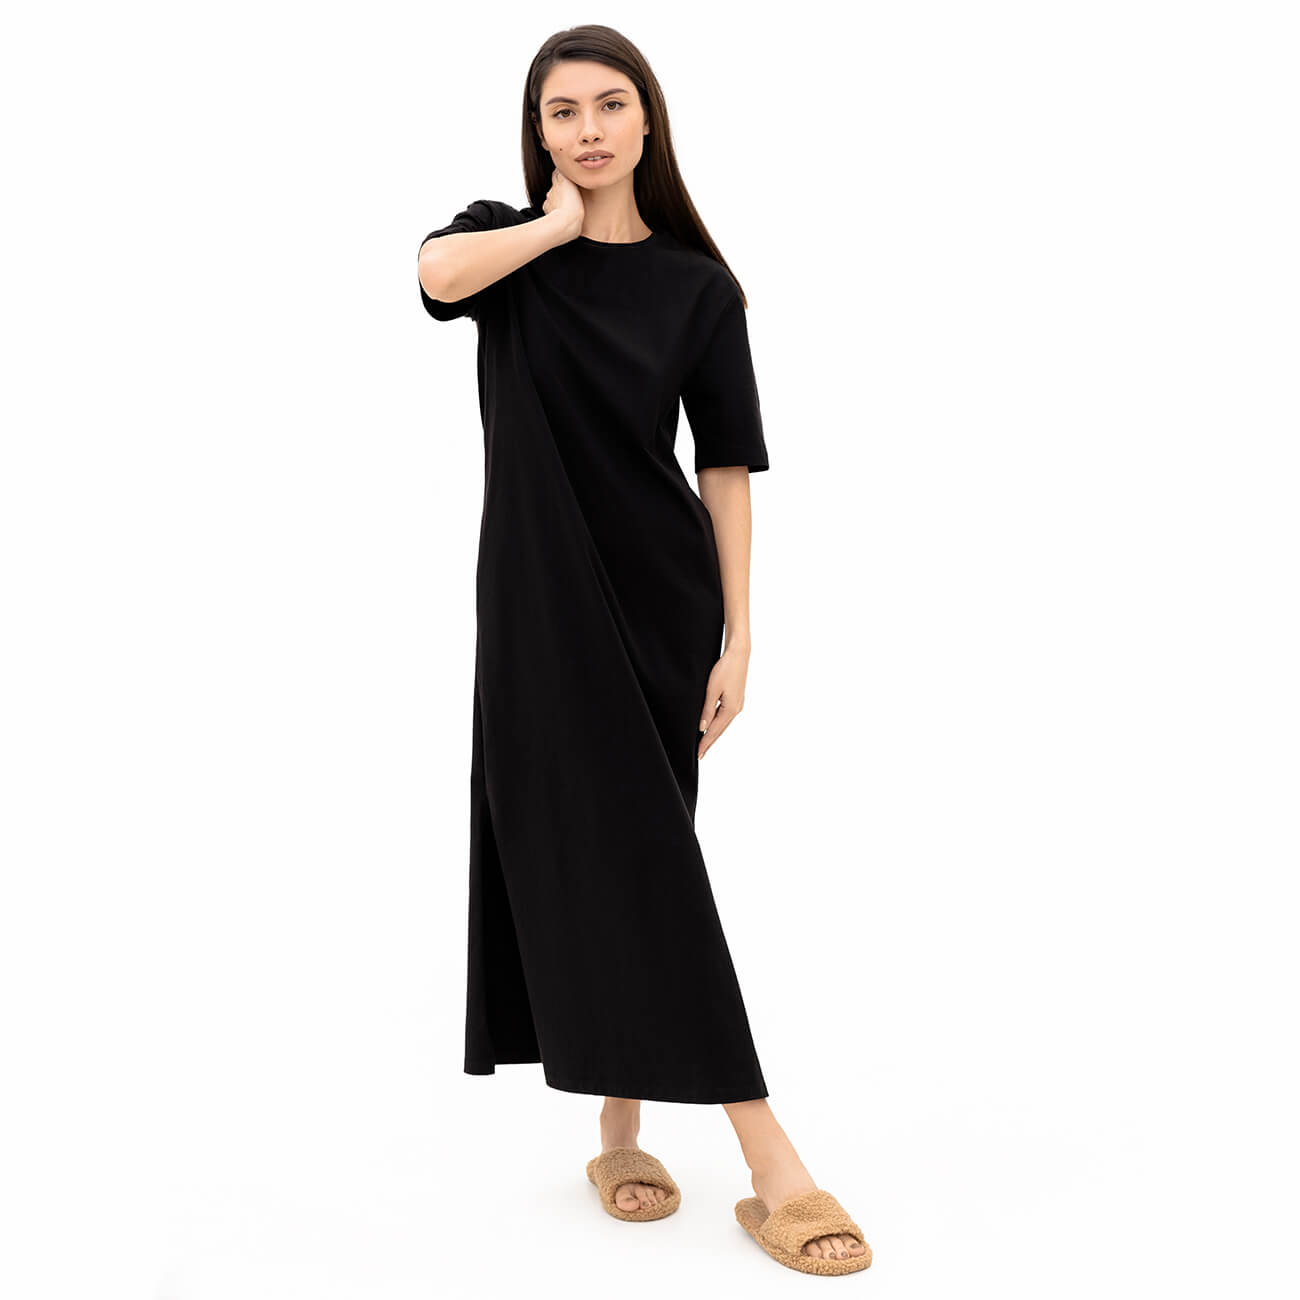 Платье-футболка женское, макси, р. M, с разрезами, хлопок, черное, Andrea - фото 1